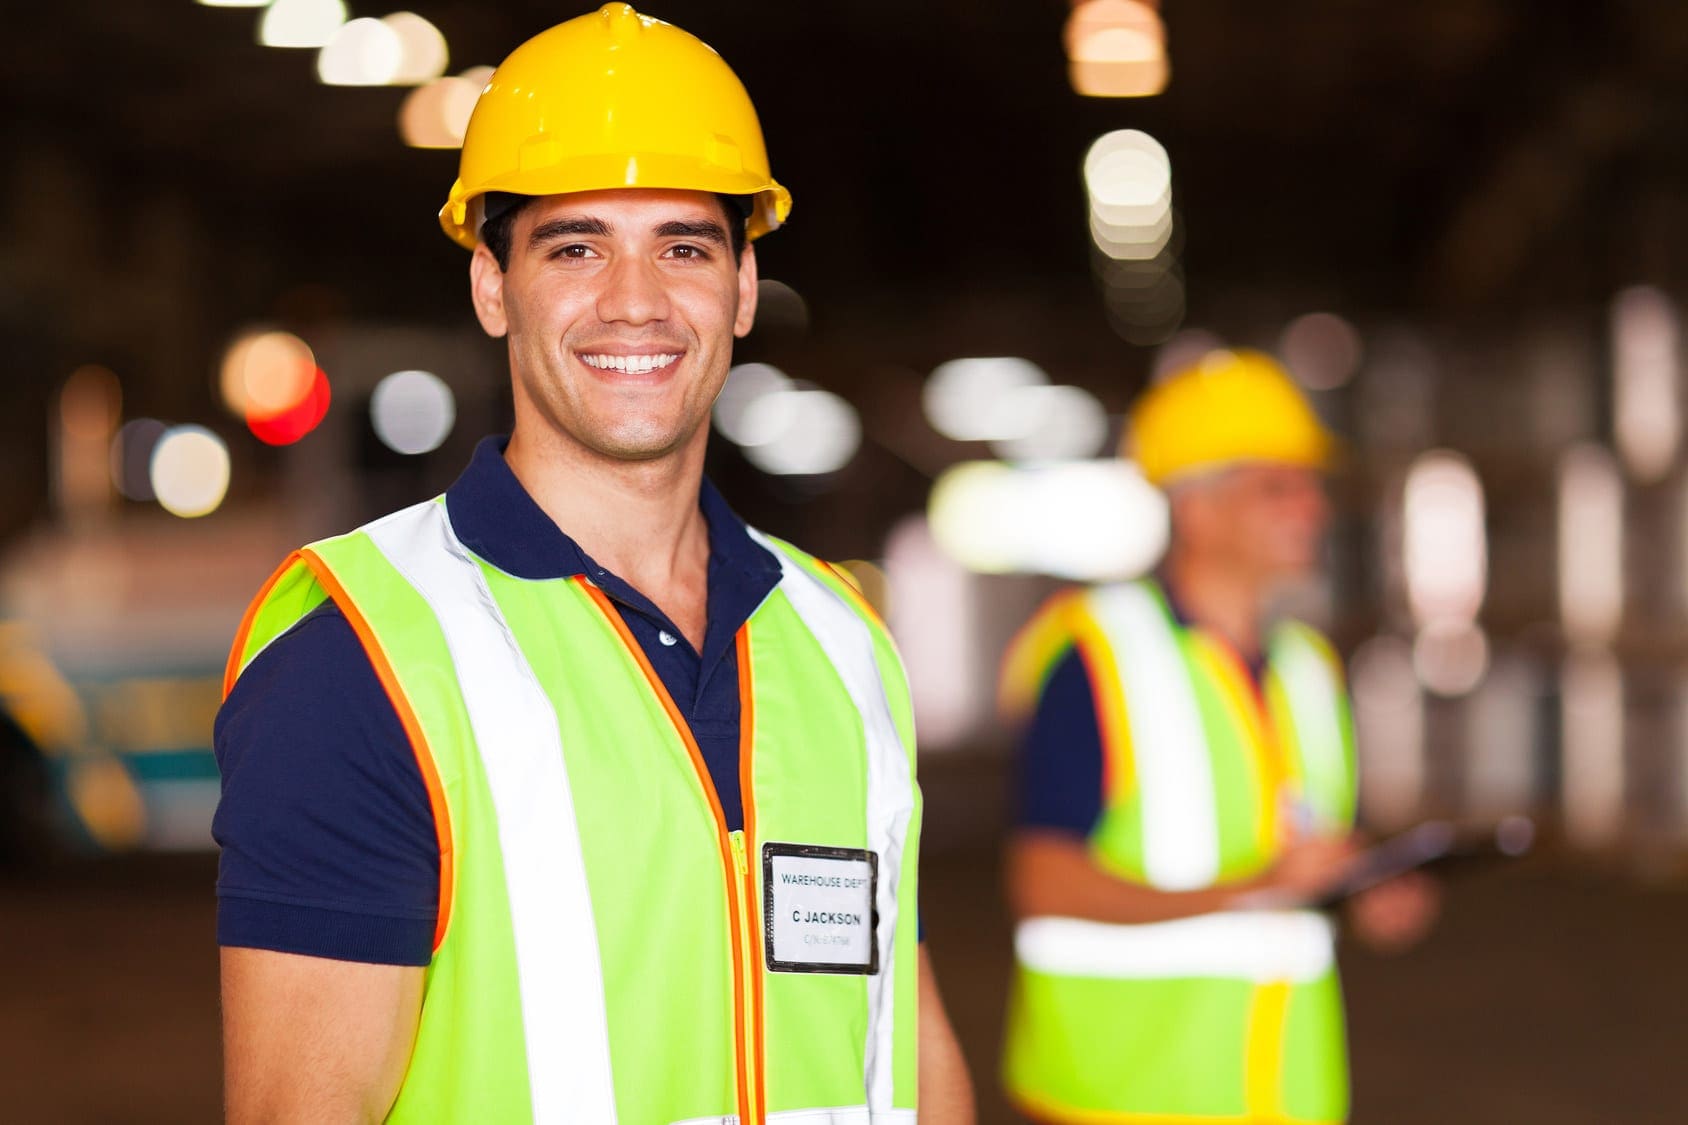 construction workers chiropractic benefits el paso tx.